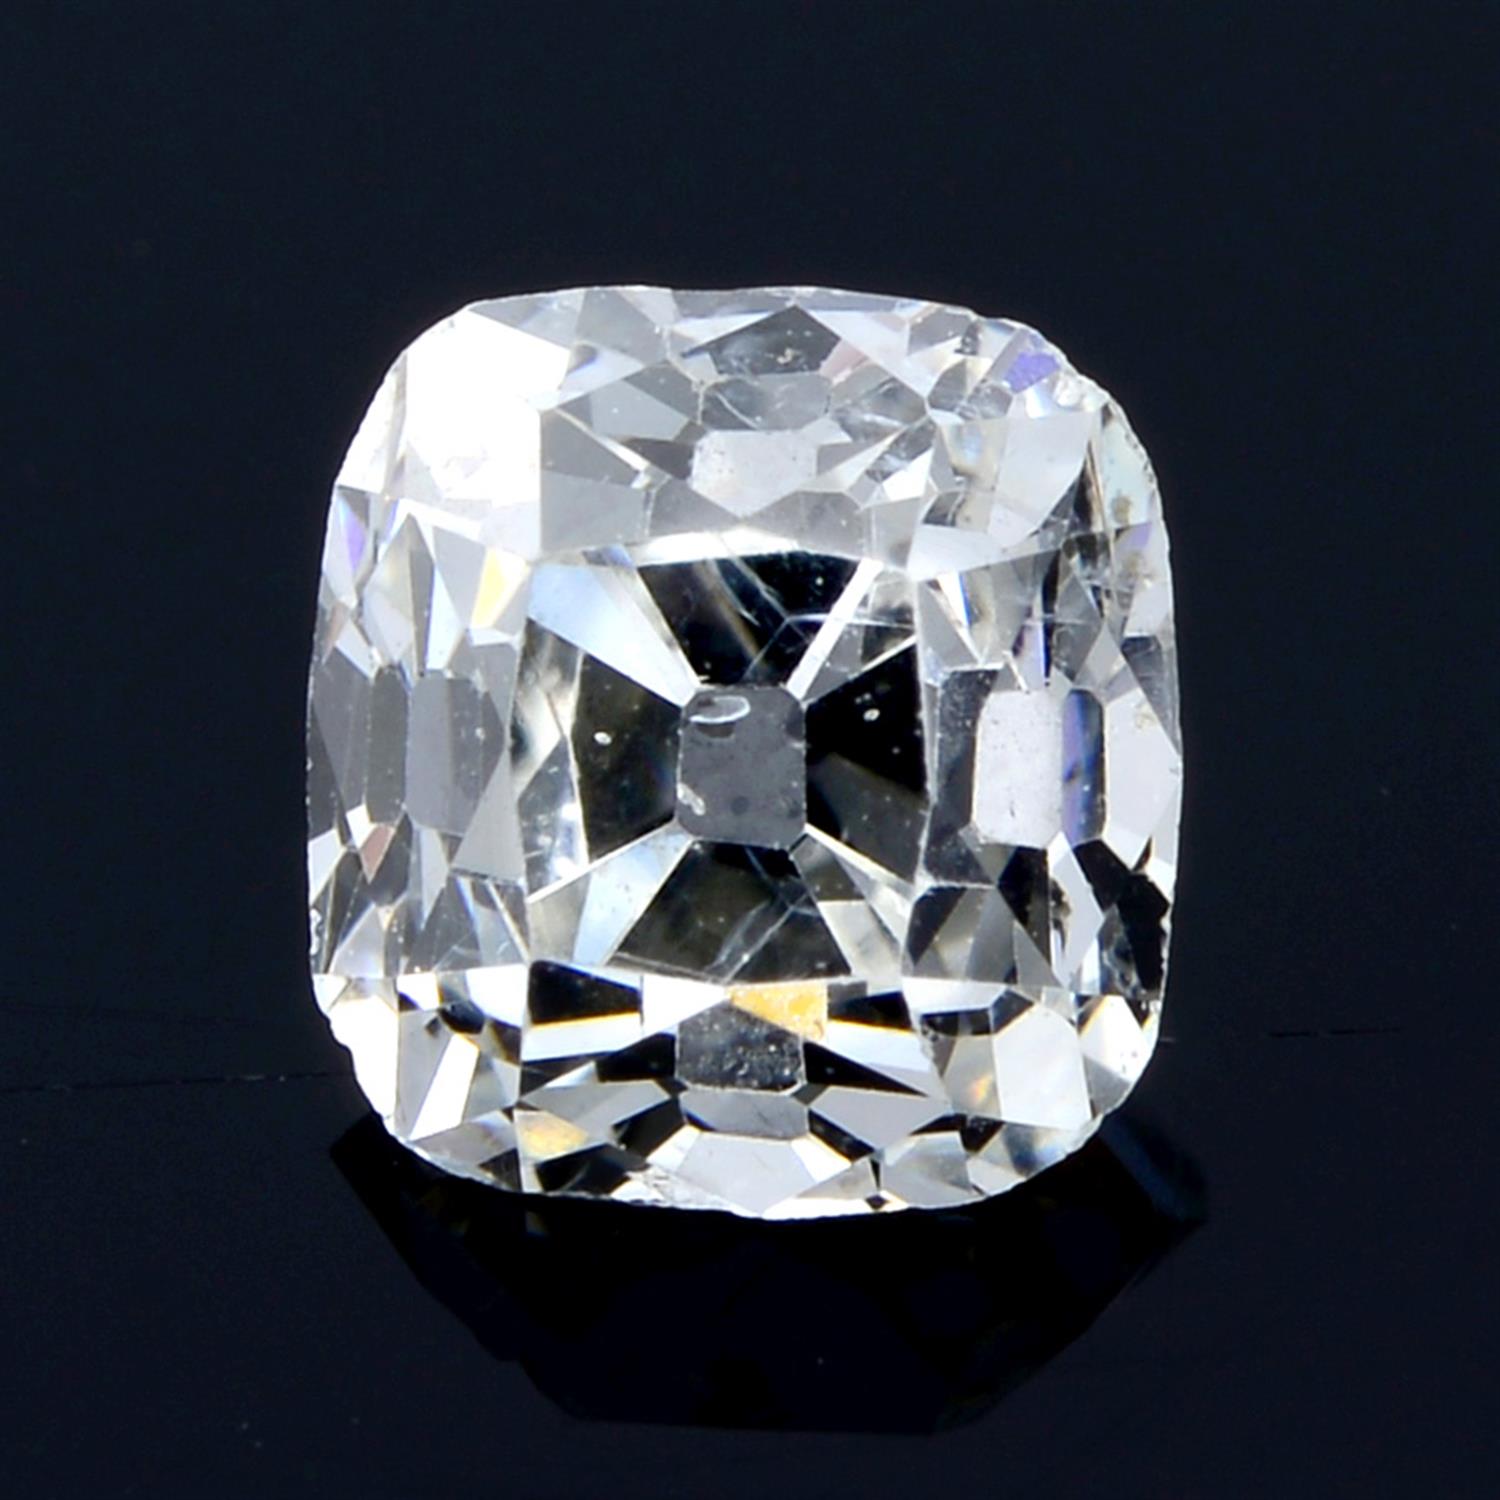 An asscher cut diamond, weighing 0.61ct